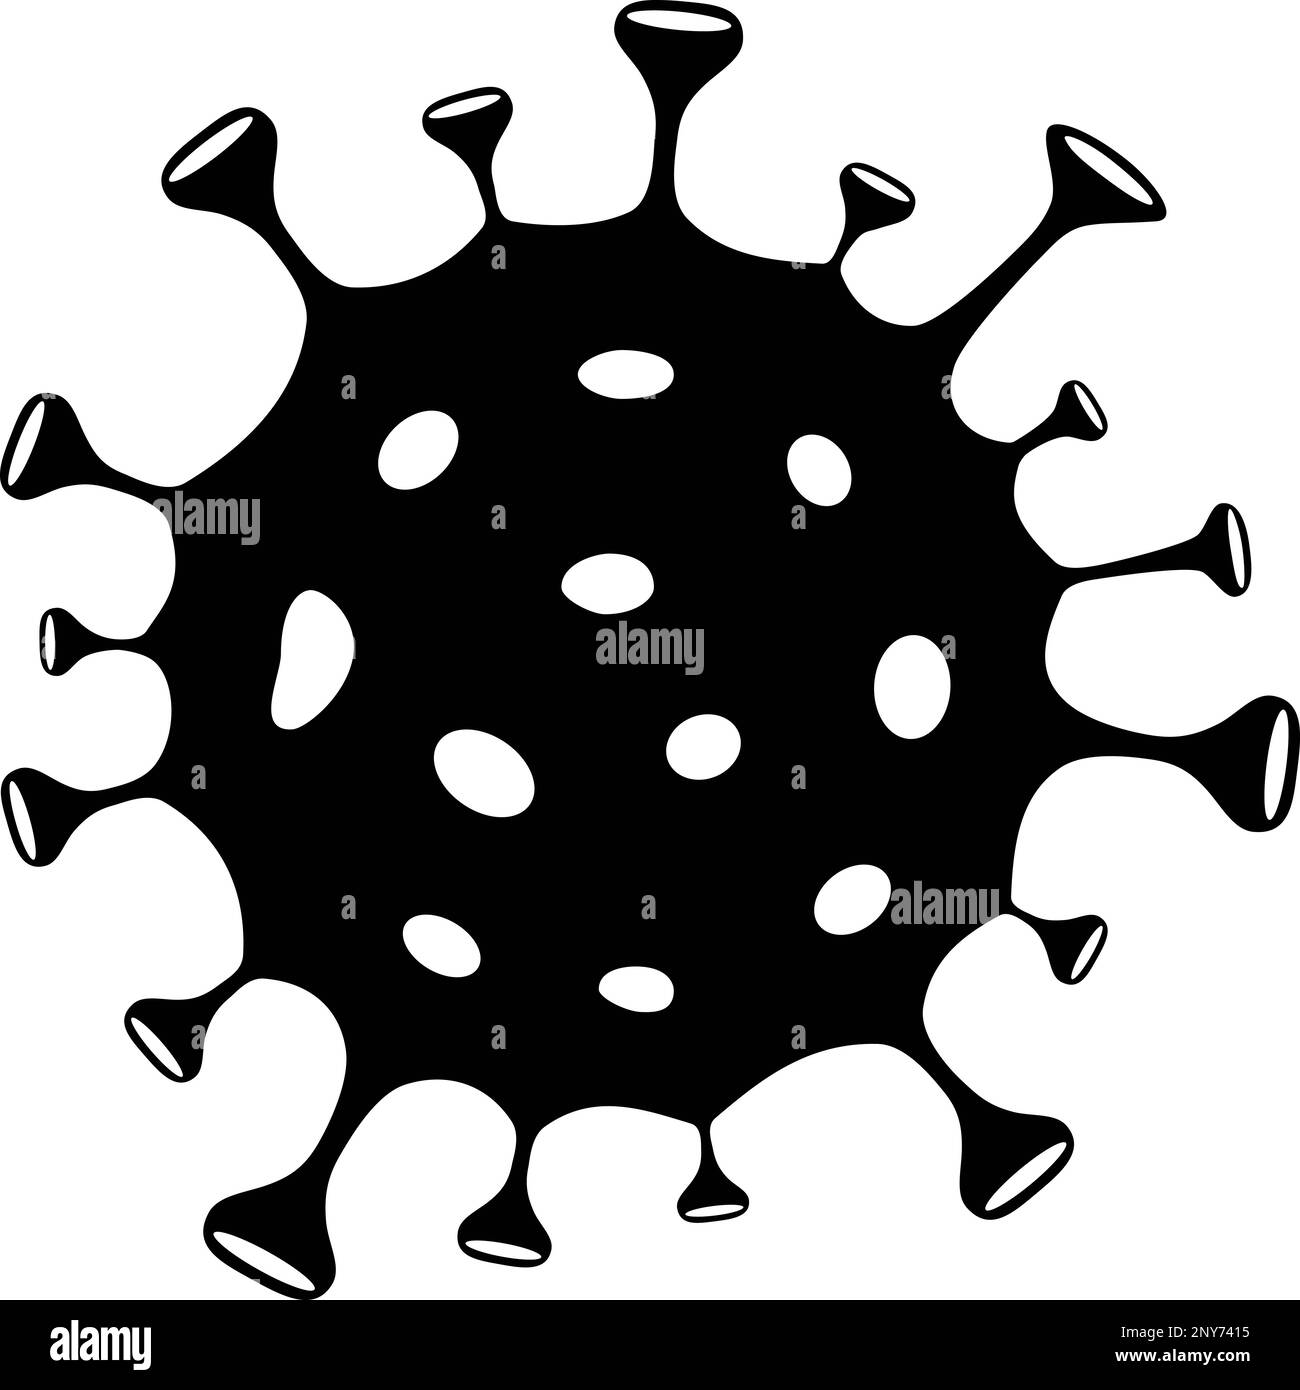 Icona di un virus o di un batterio come concetto di pandemia, epidemia o diffusione della malattia Illustrazione Vettoriale